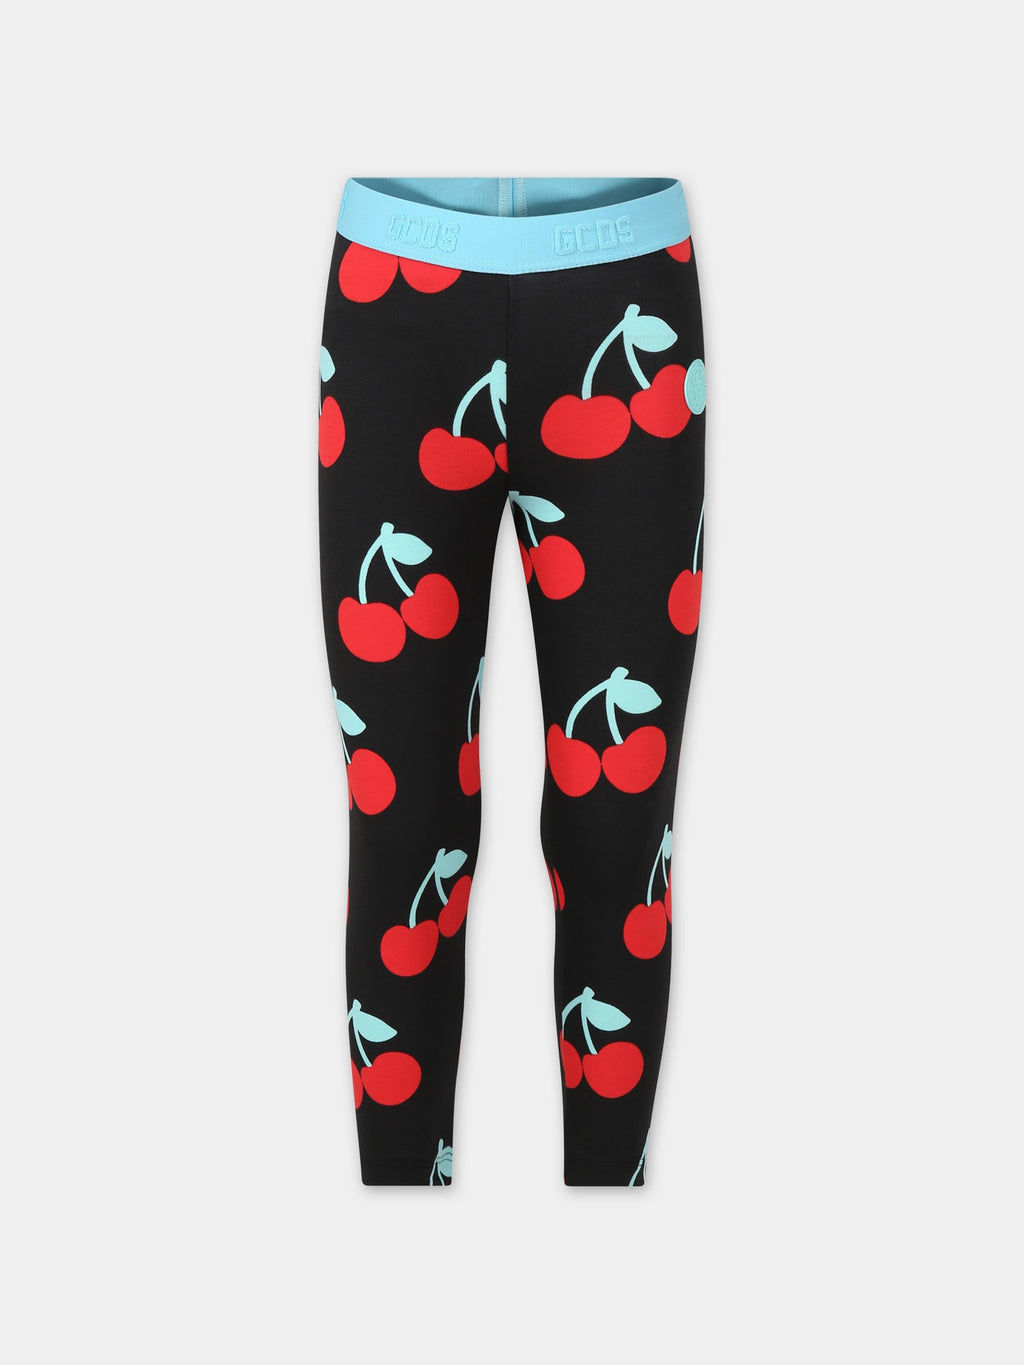 Black leggings for girl with cherries